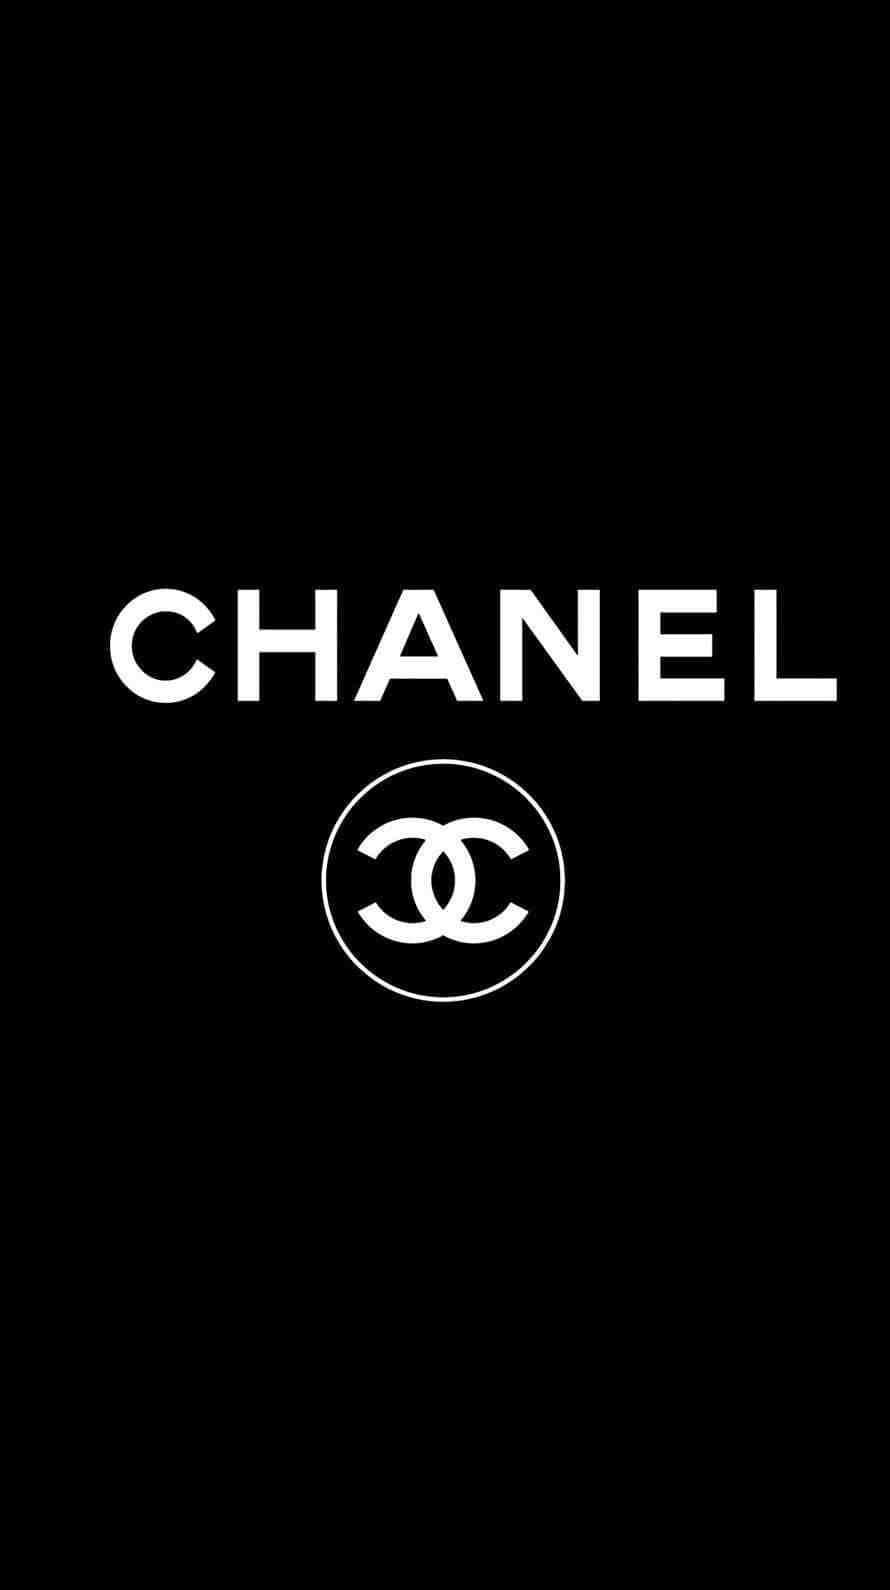 Ảnh nền Chanel đơn giản